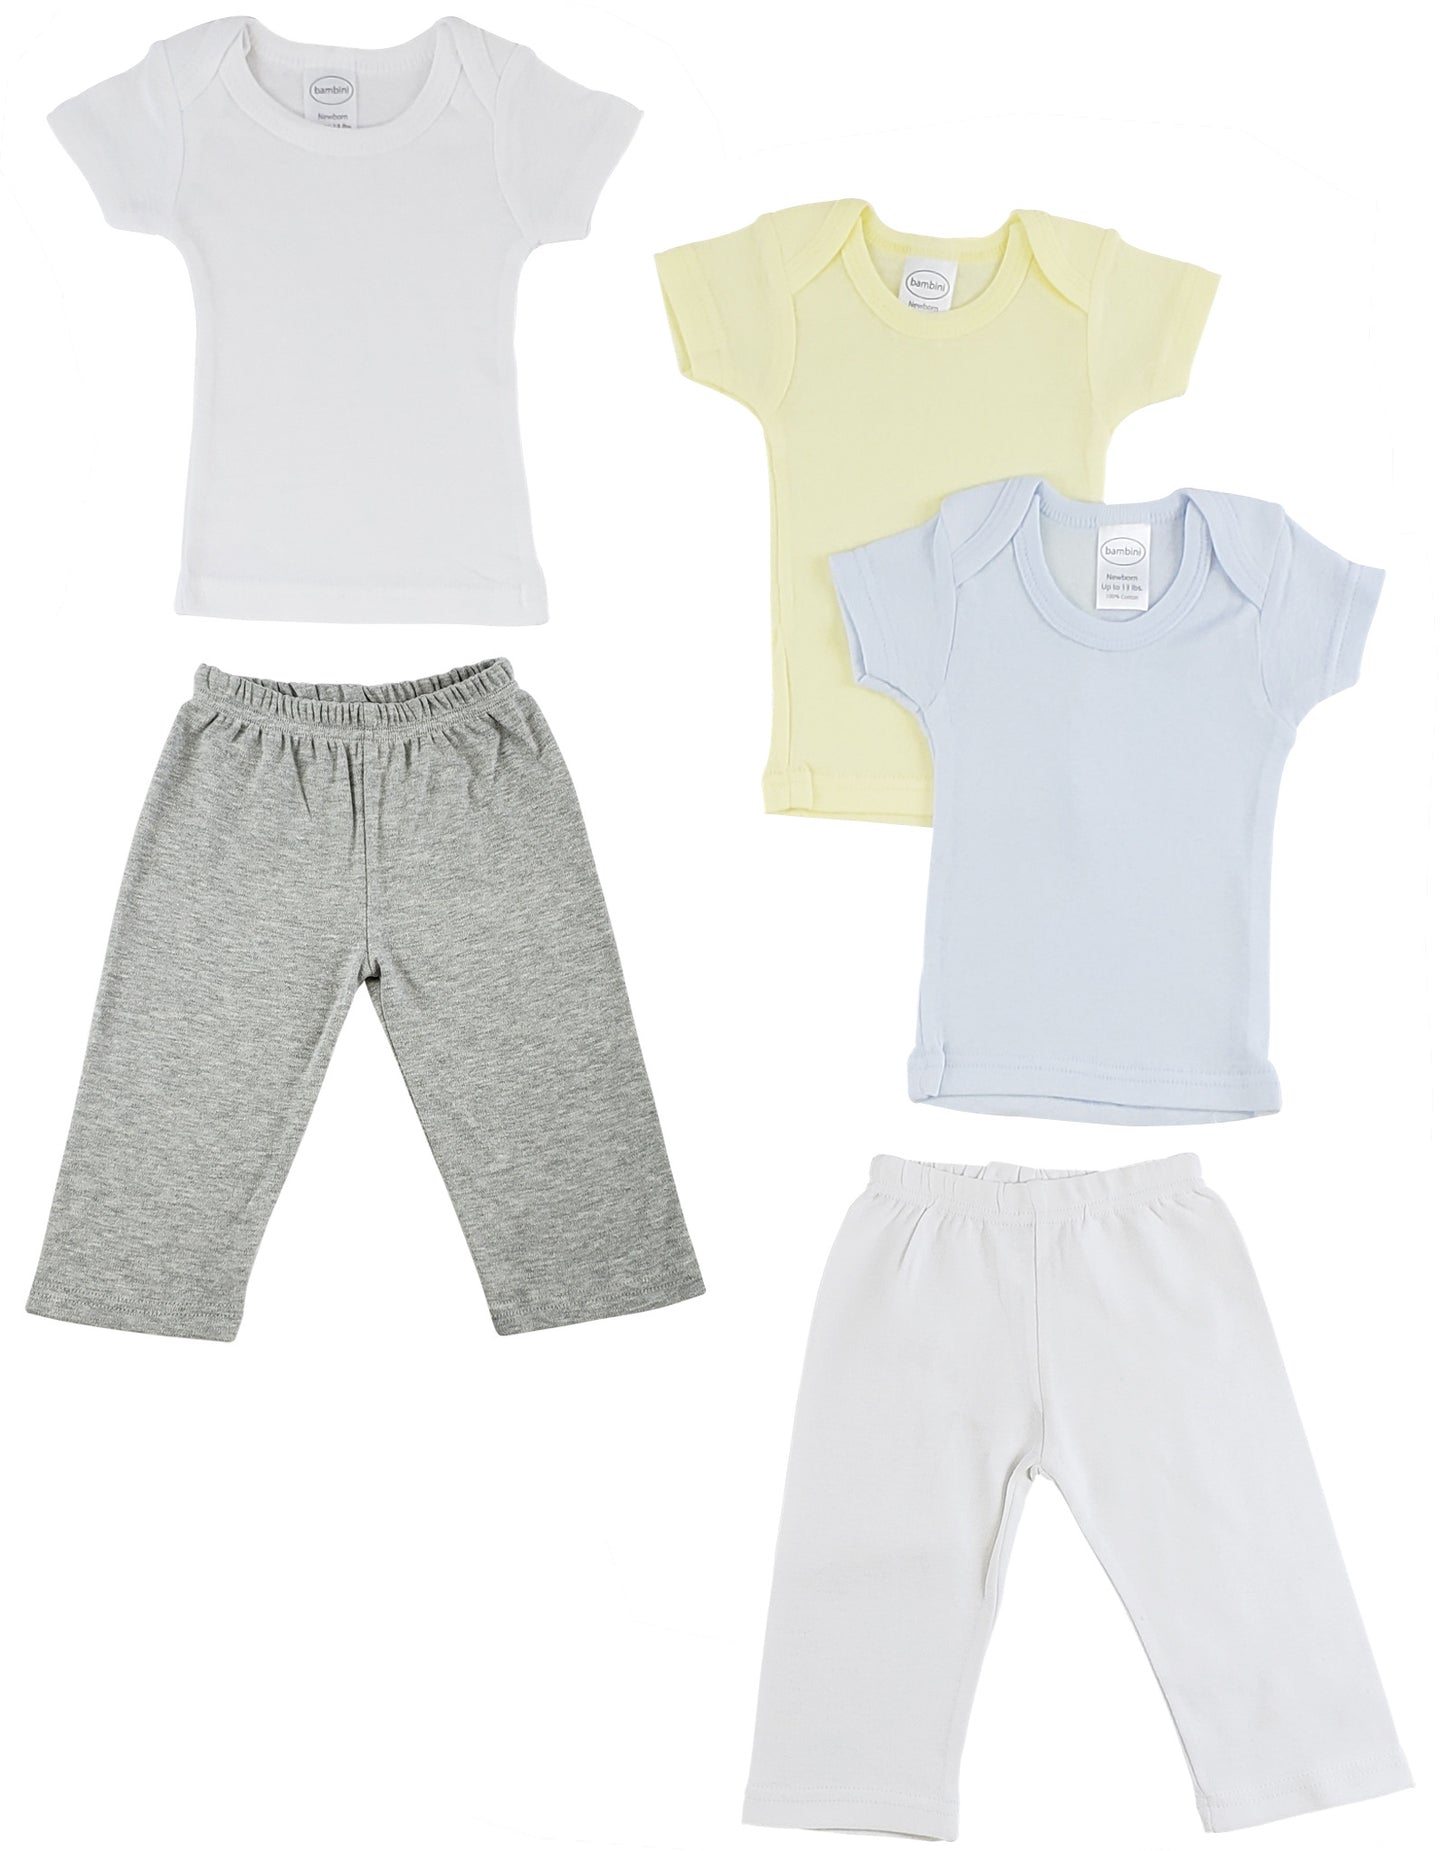 Infant Boys T-Shirts and Track Sweatpants CS_0464